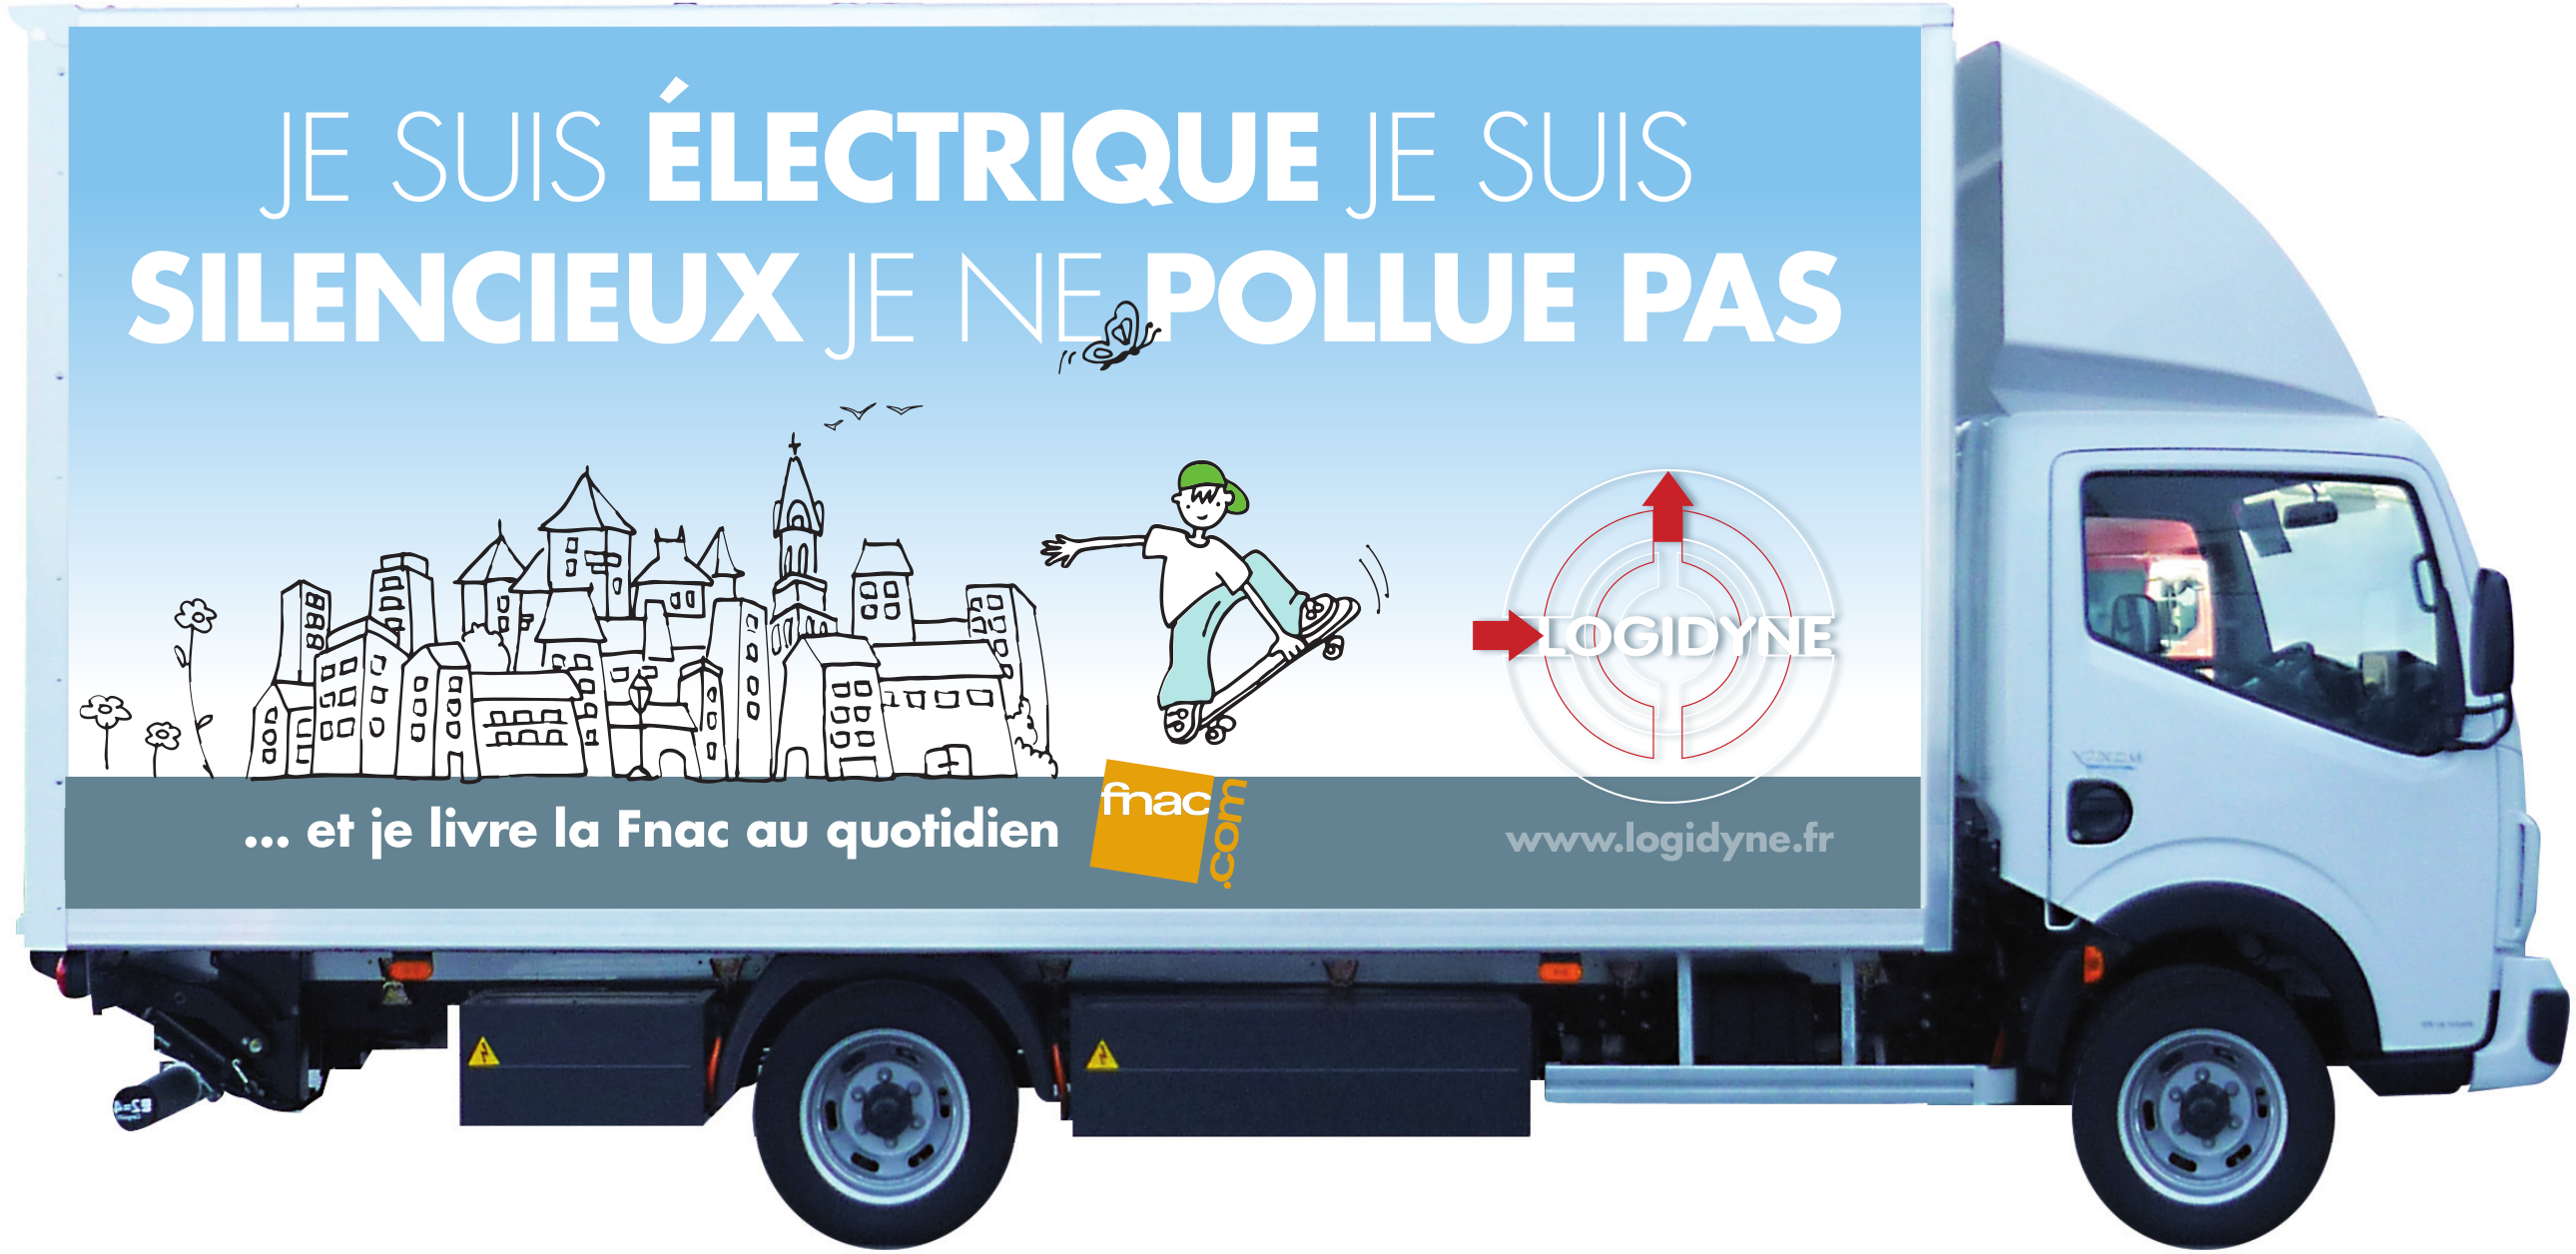 camion-electrique-logidyne.png